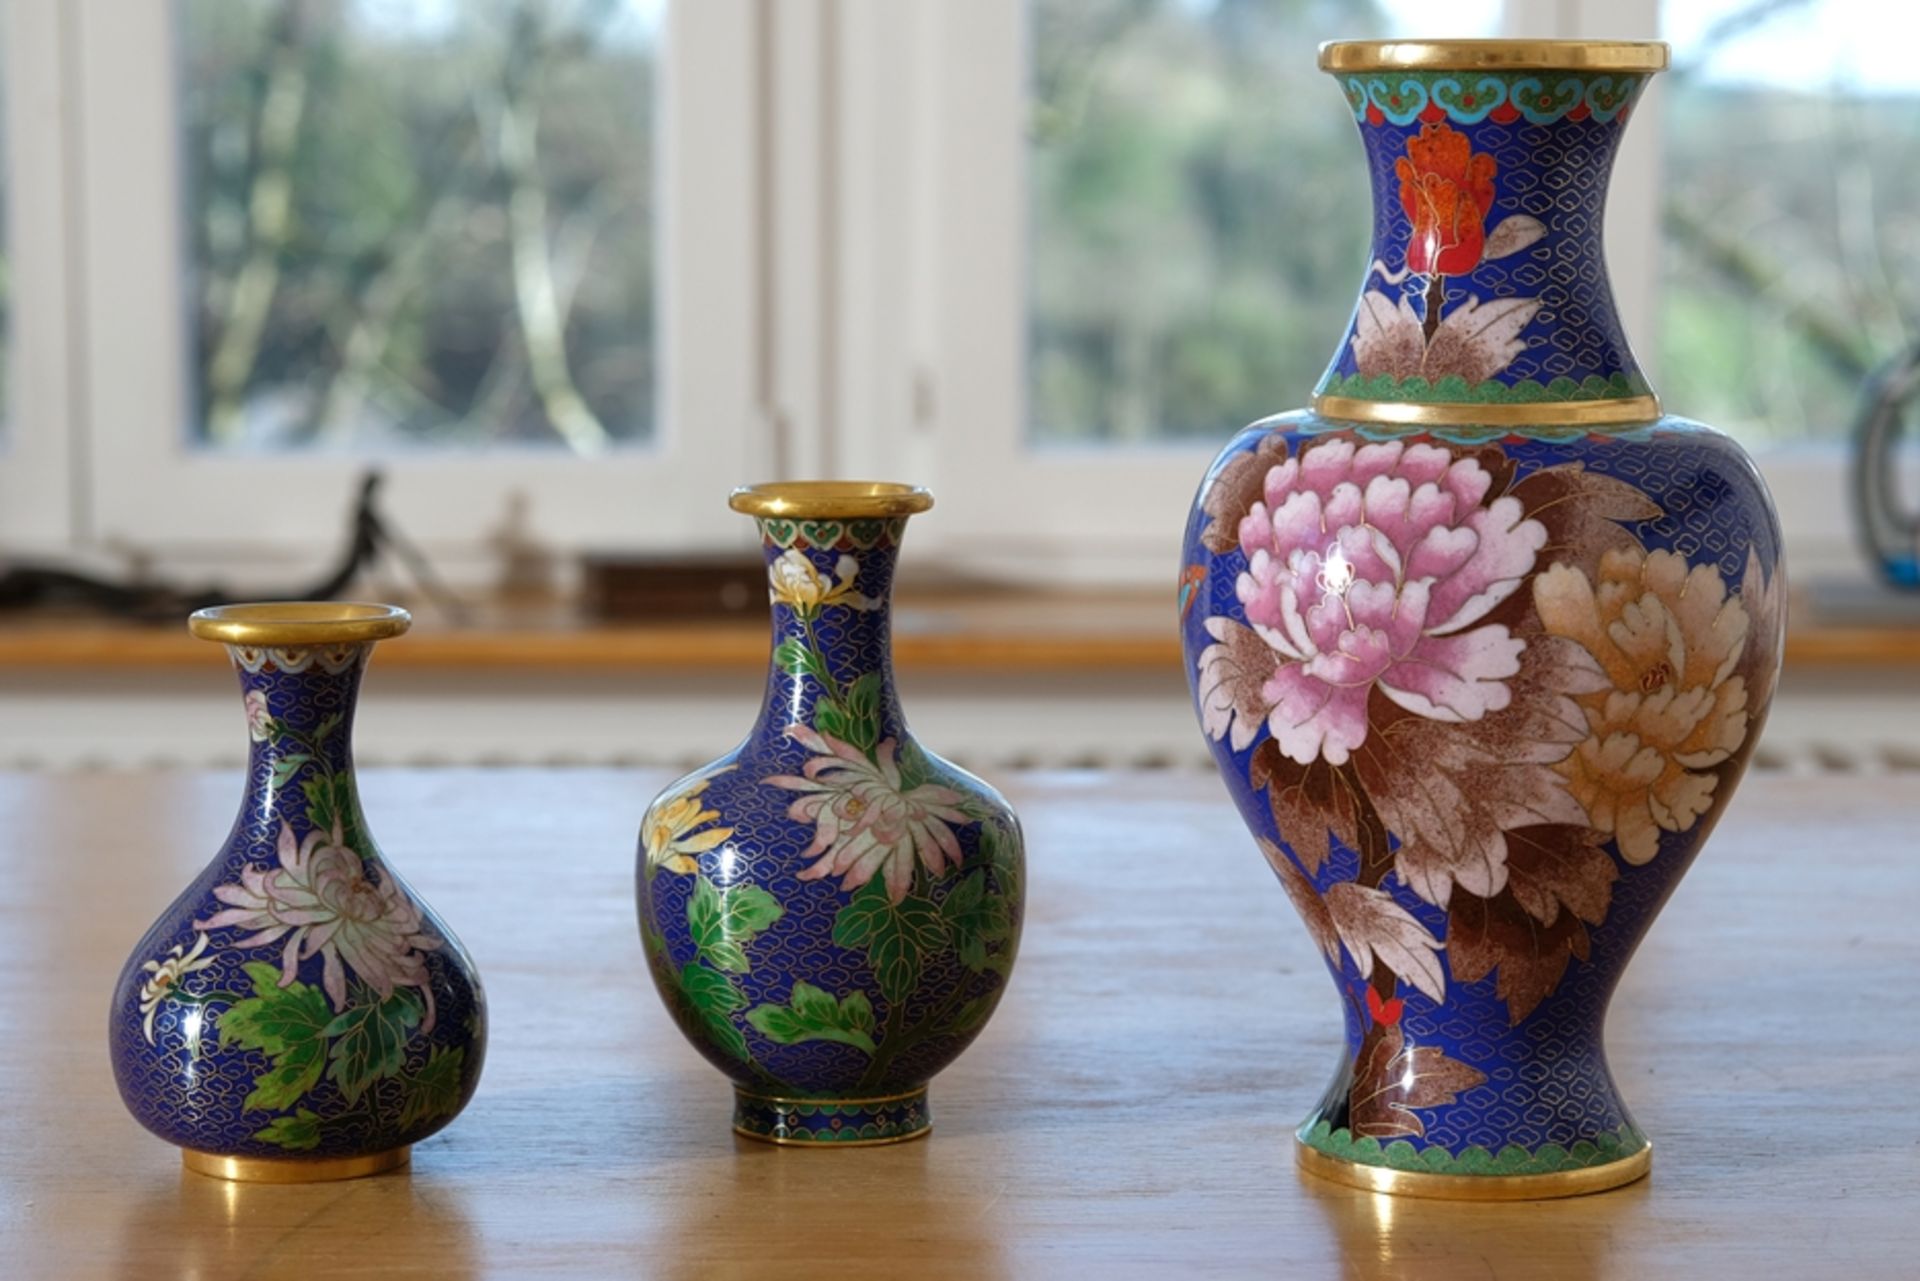 Japanische Cloisonné-Vasen, drei blaue Vasen aus Emaille. Mit floralen Motiven verziert. Inneres ve